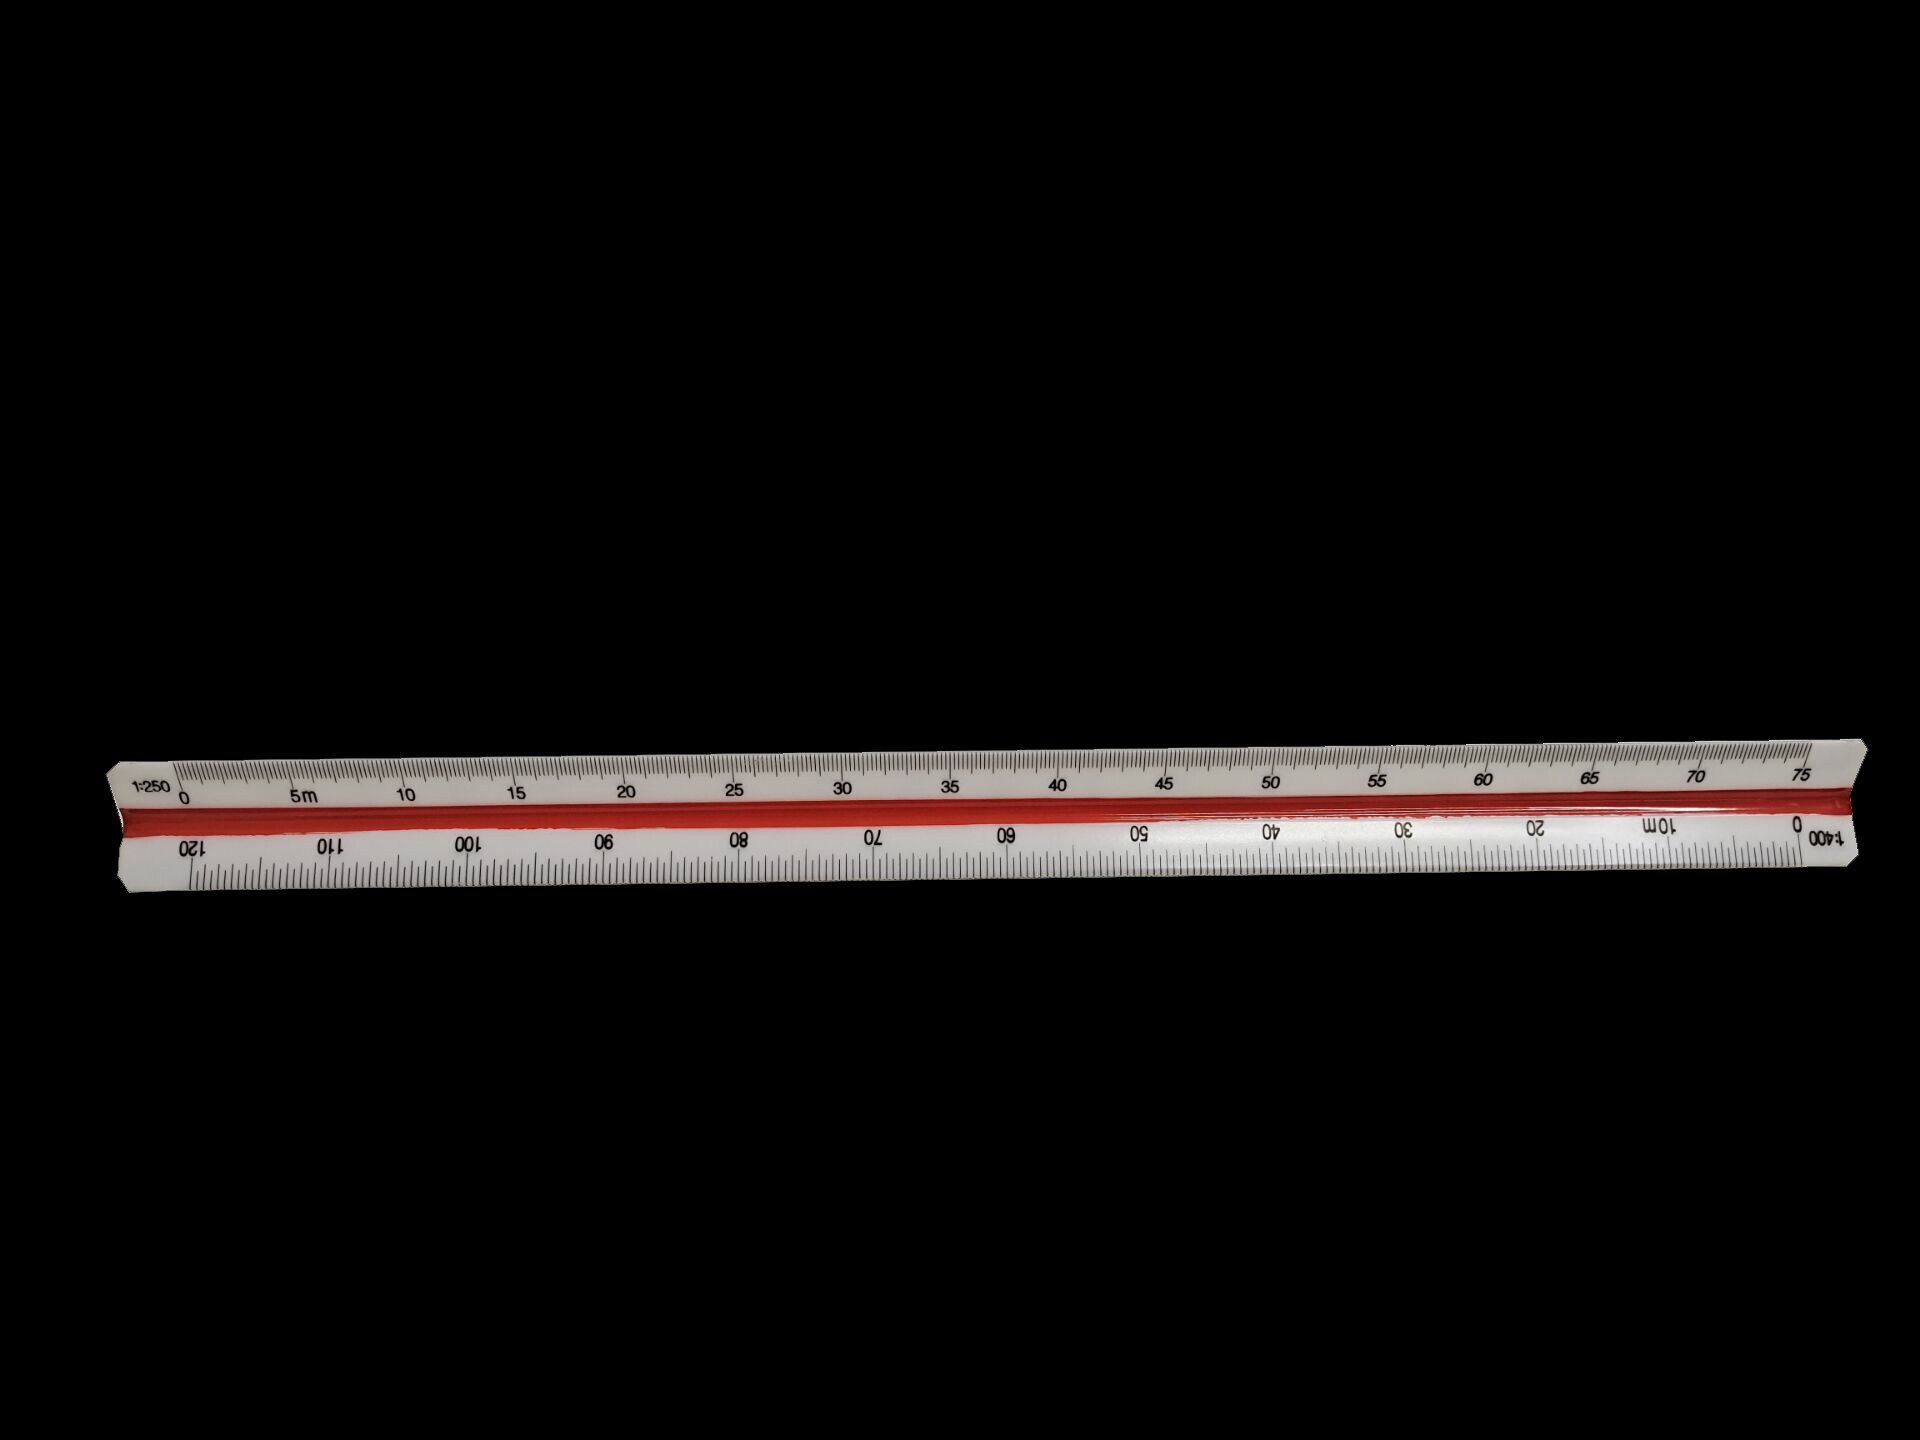 30 cm farvekodet sidetrekant lineal 1:100 ~ 1:500 trekant metrisk lineal engineer værktøj 12.6 "flerfarvet